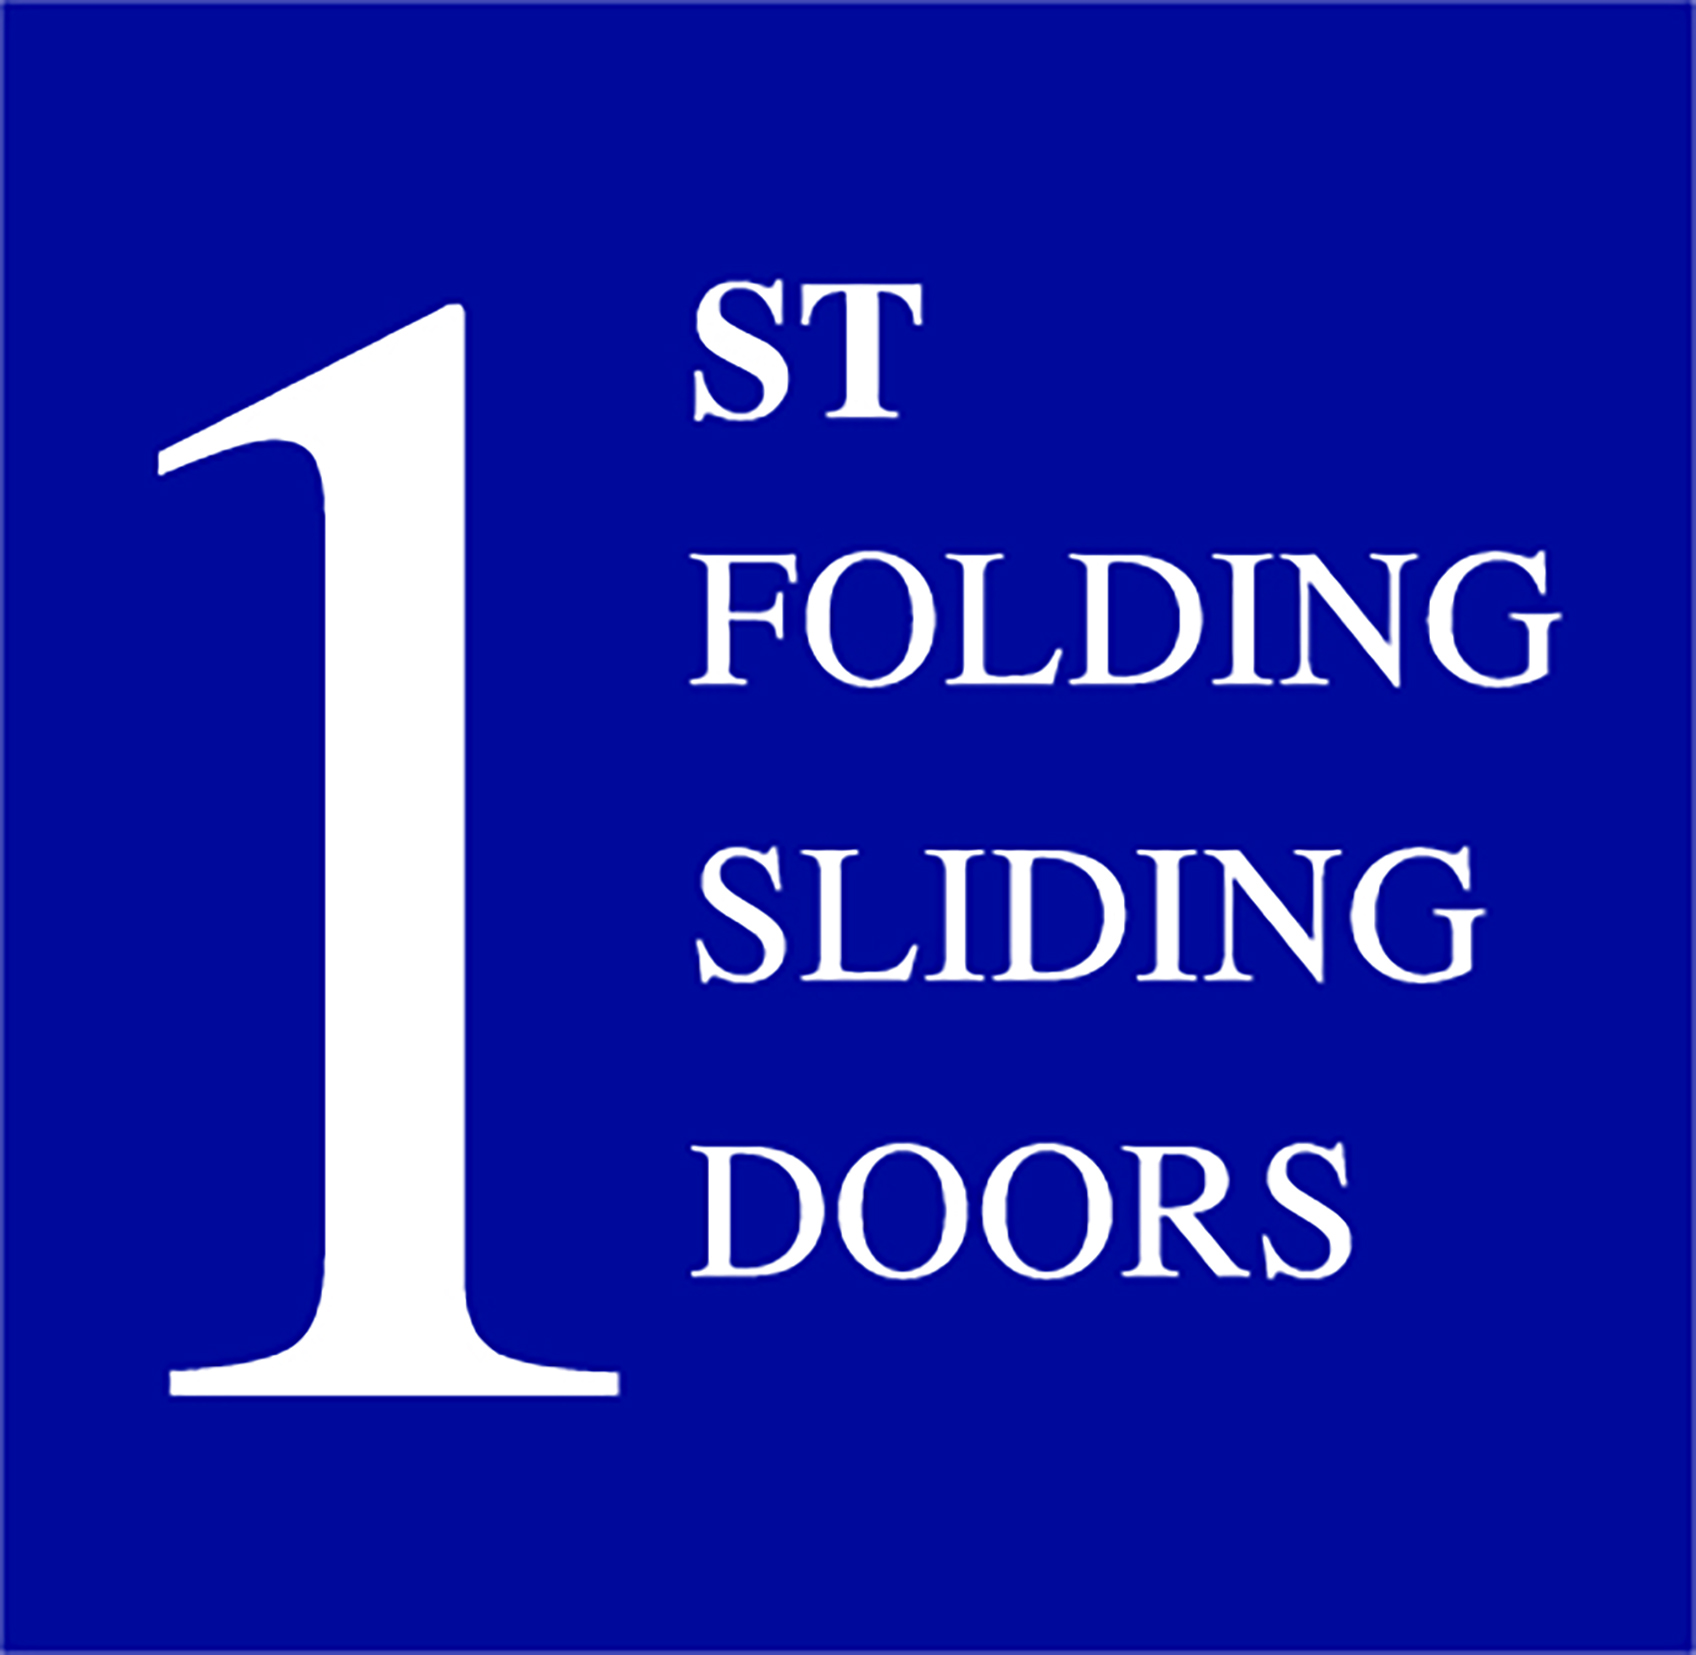 1st Folding Sliding Doors Ltd  (Surbiton)